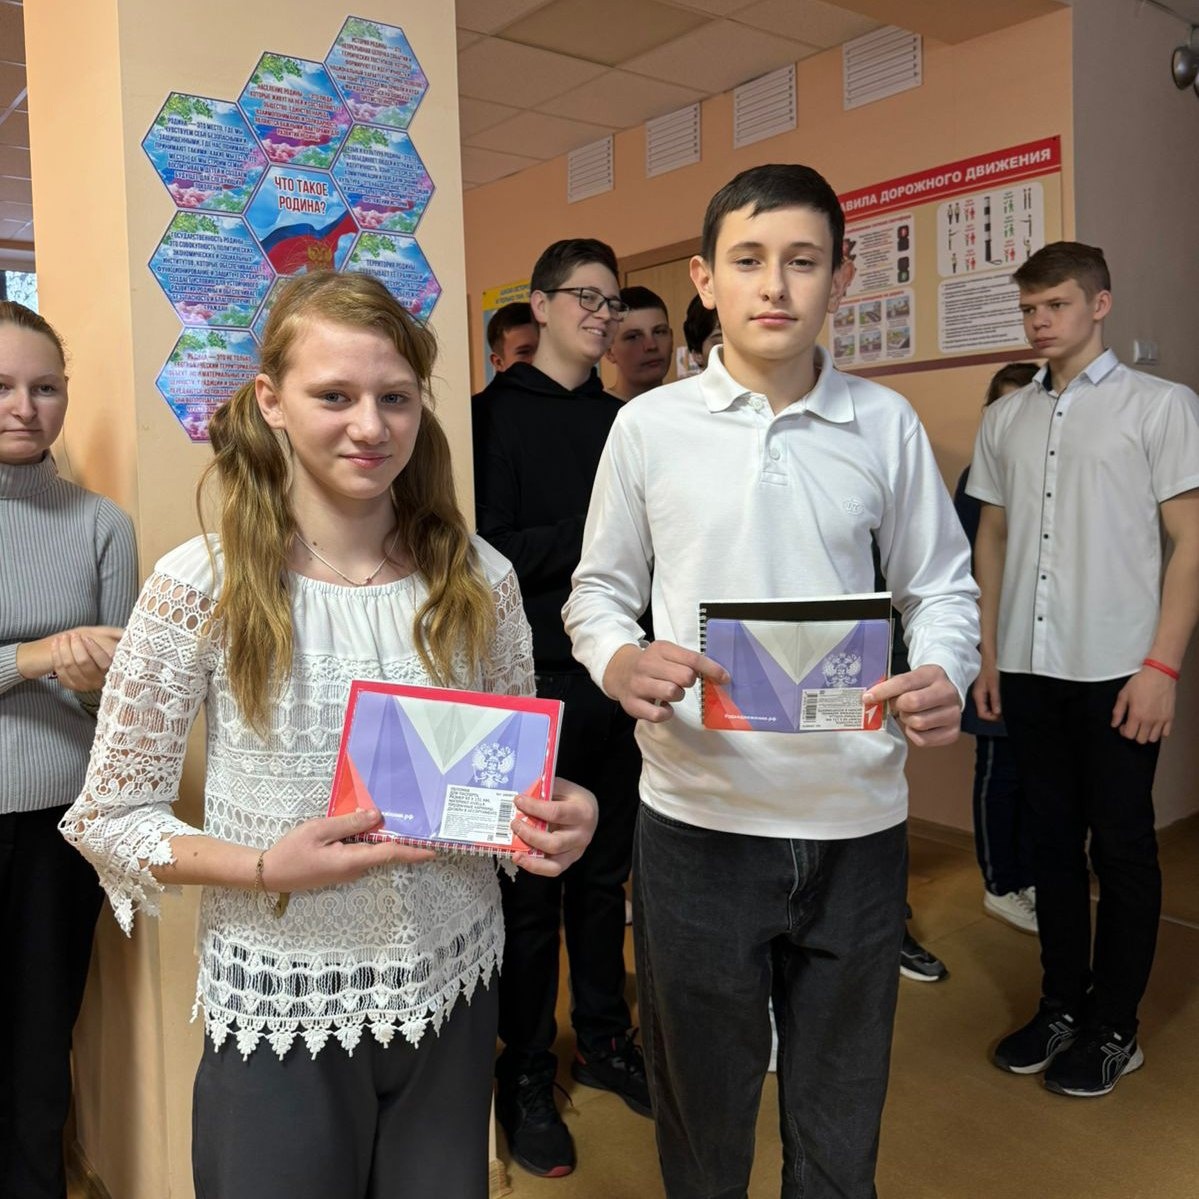 Румынин Евгений  и Дроздова Маргарита получили паспорта РФ.